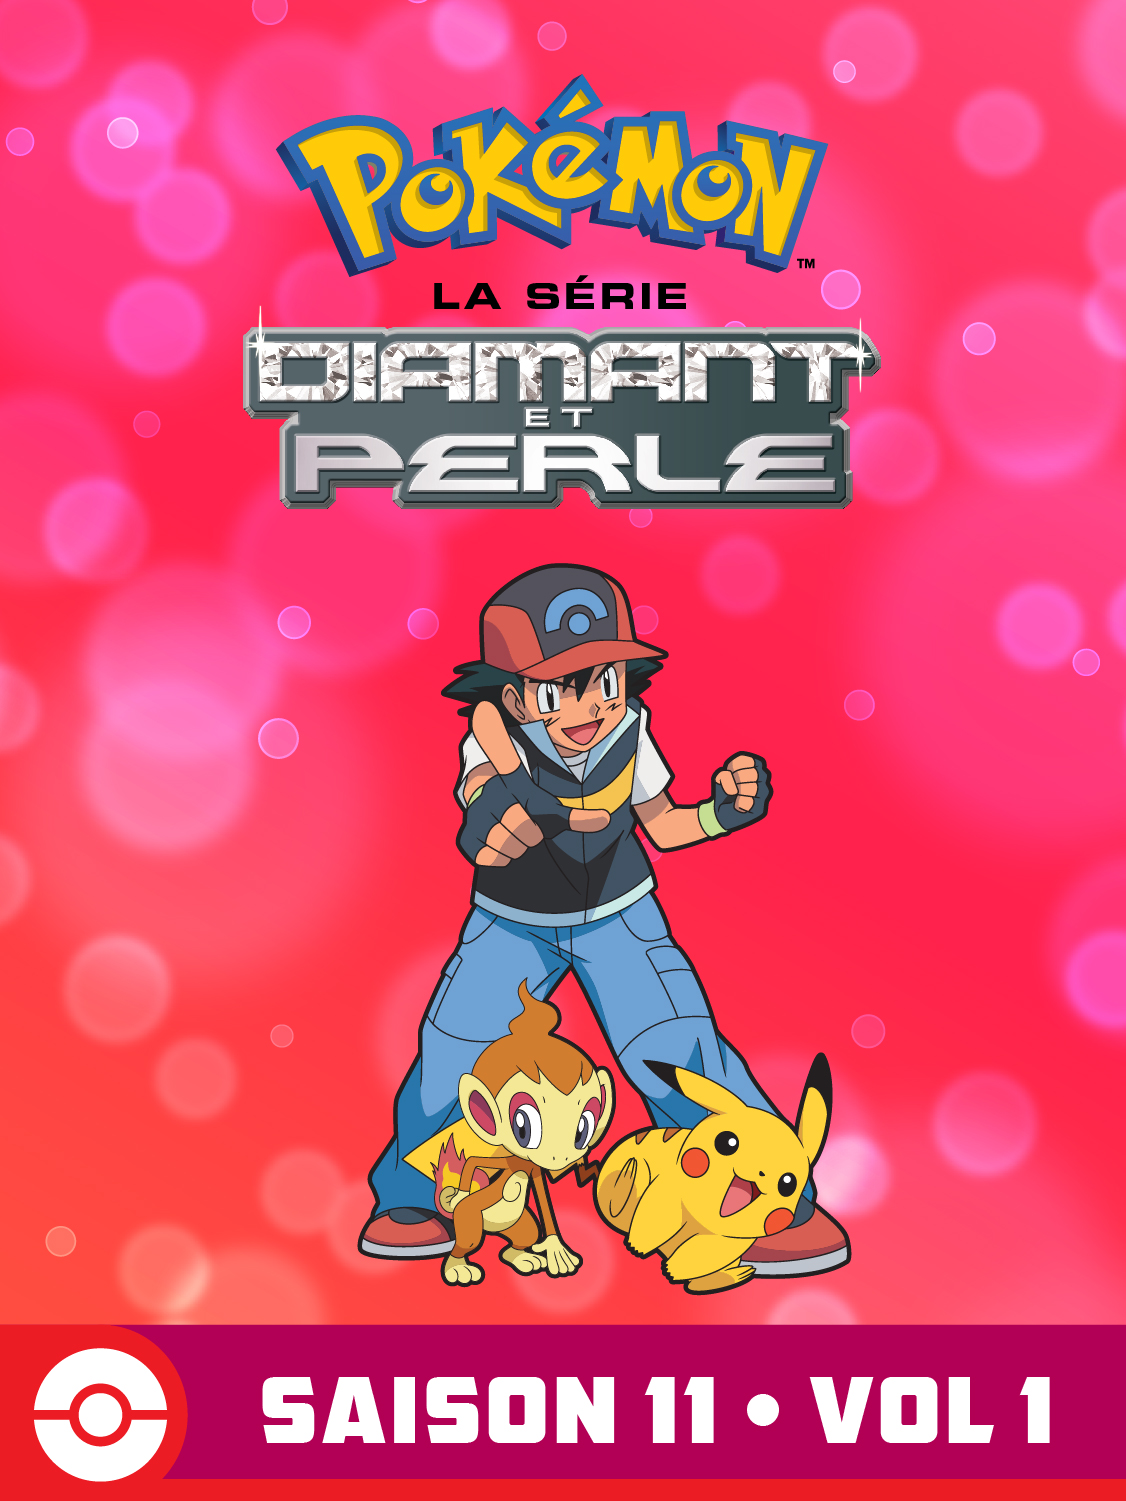  DP Battle Dimension Volume 1 Saison 11 de Pokémon la Série - 2010 